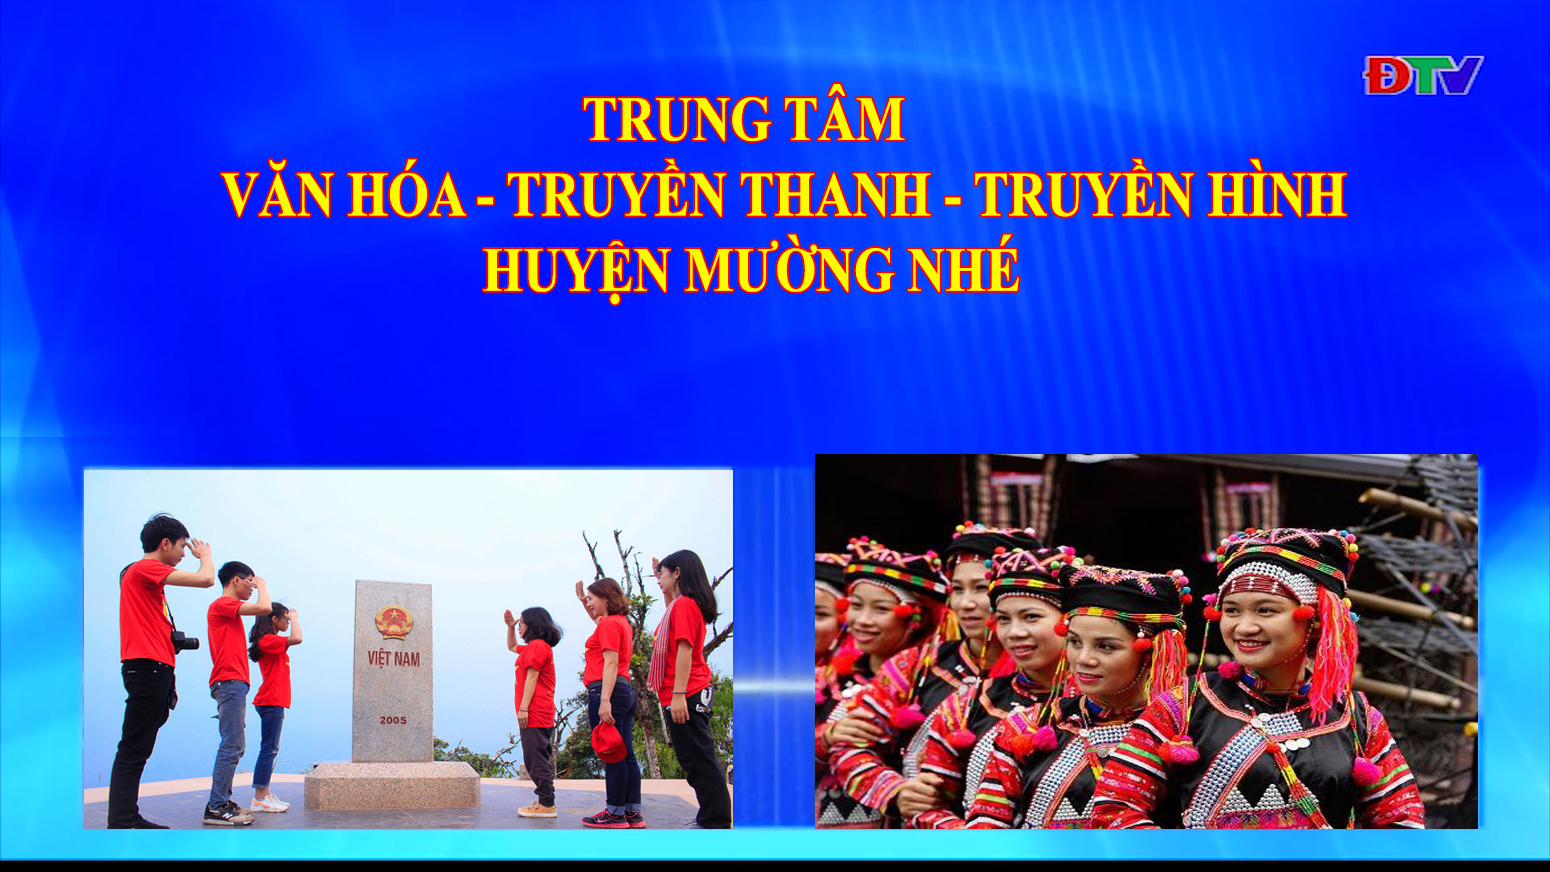 Trung tâm Văn hóa Truyền thanh Truyền hình huyện Mường Nhé (Ngày 14-5-2020)